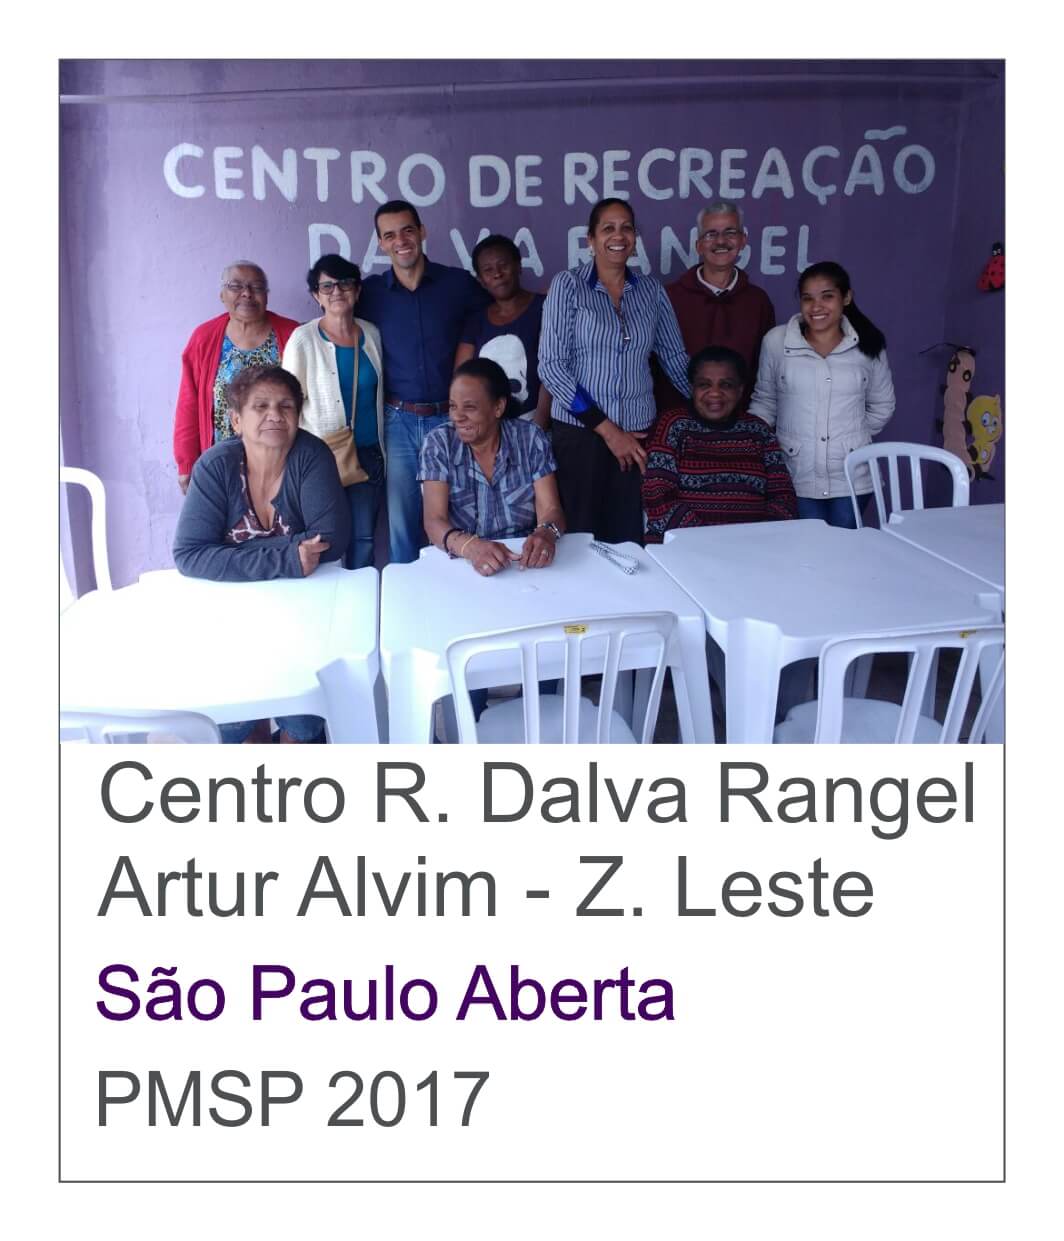 Centro Recreacao Dalva Rangel Atividades para idosos